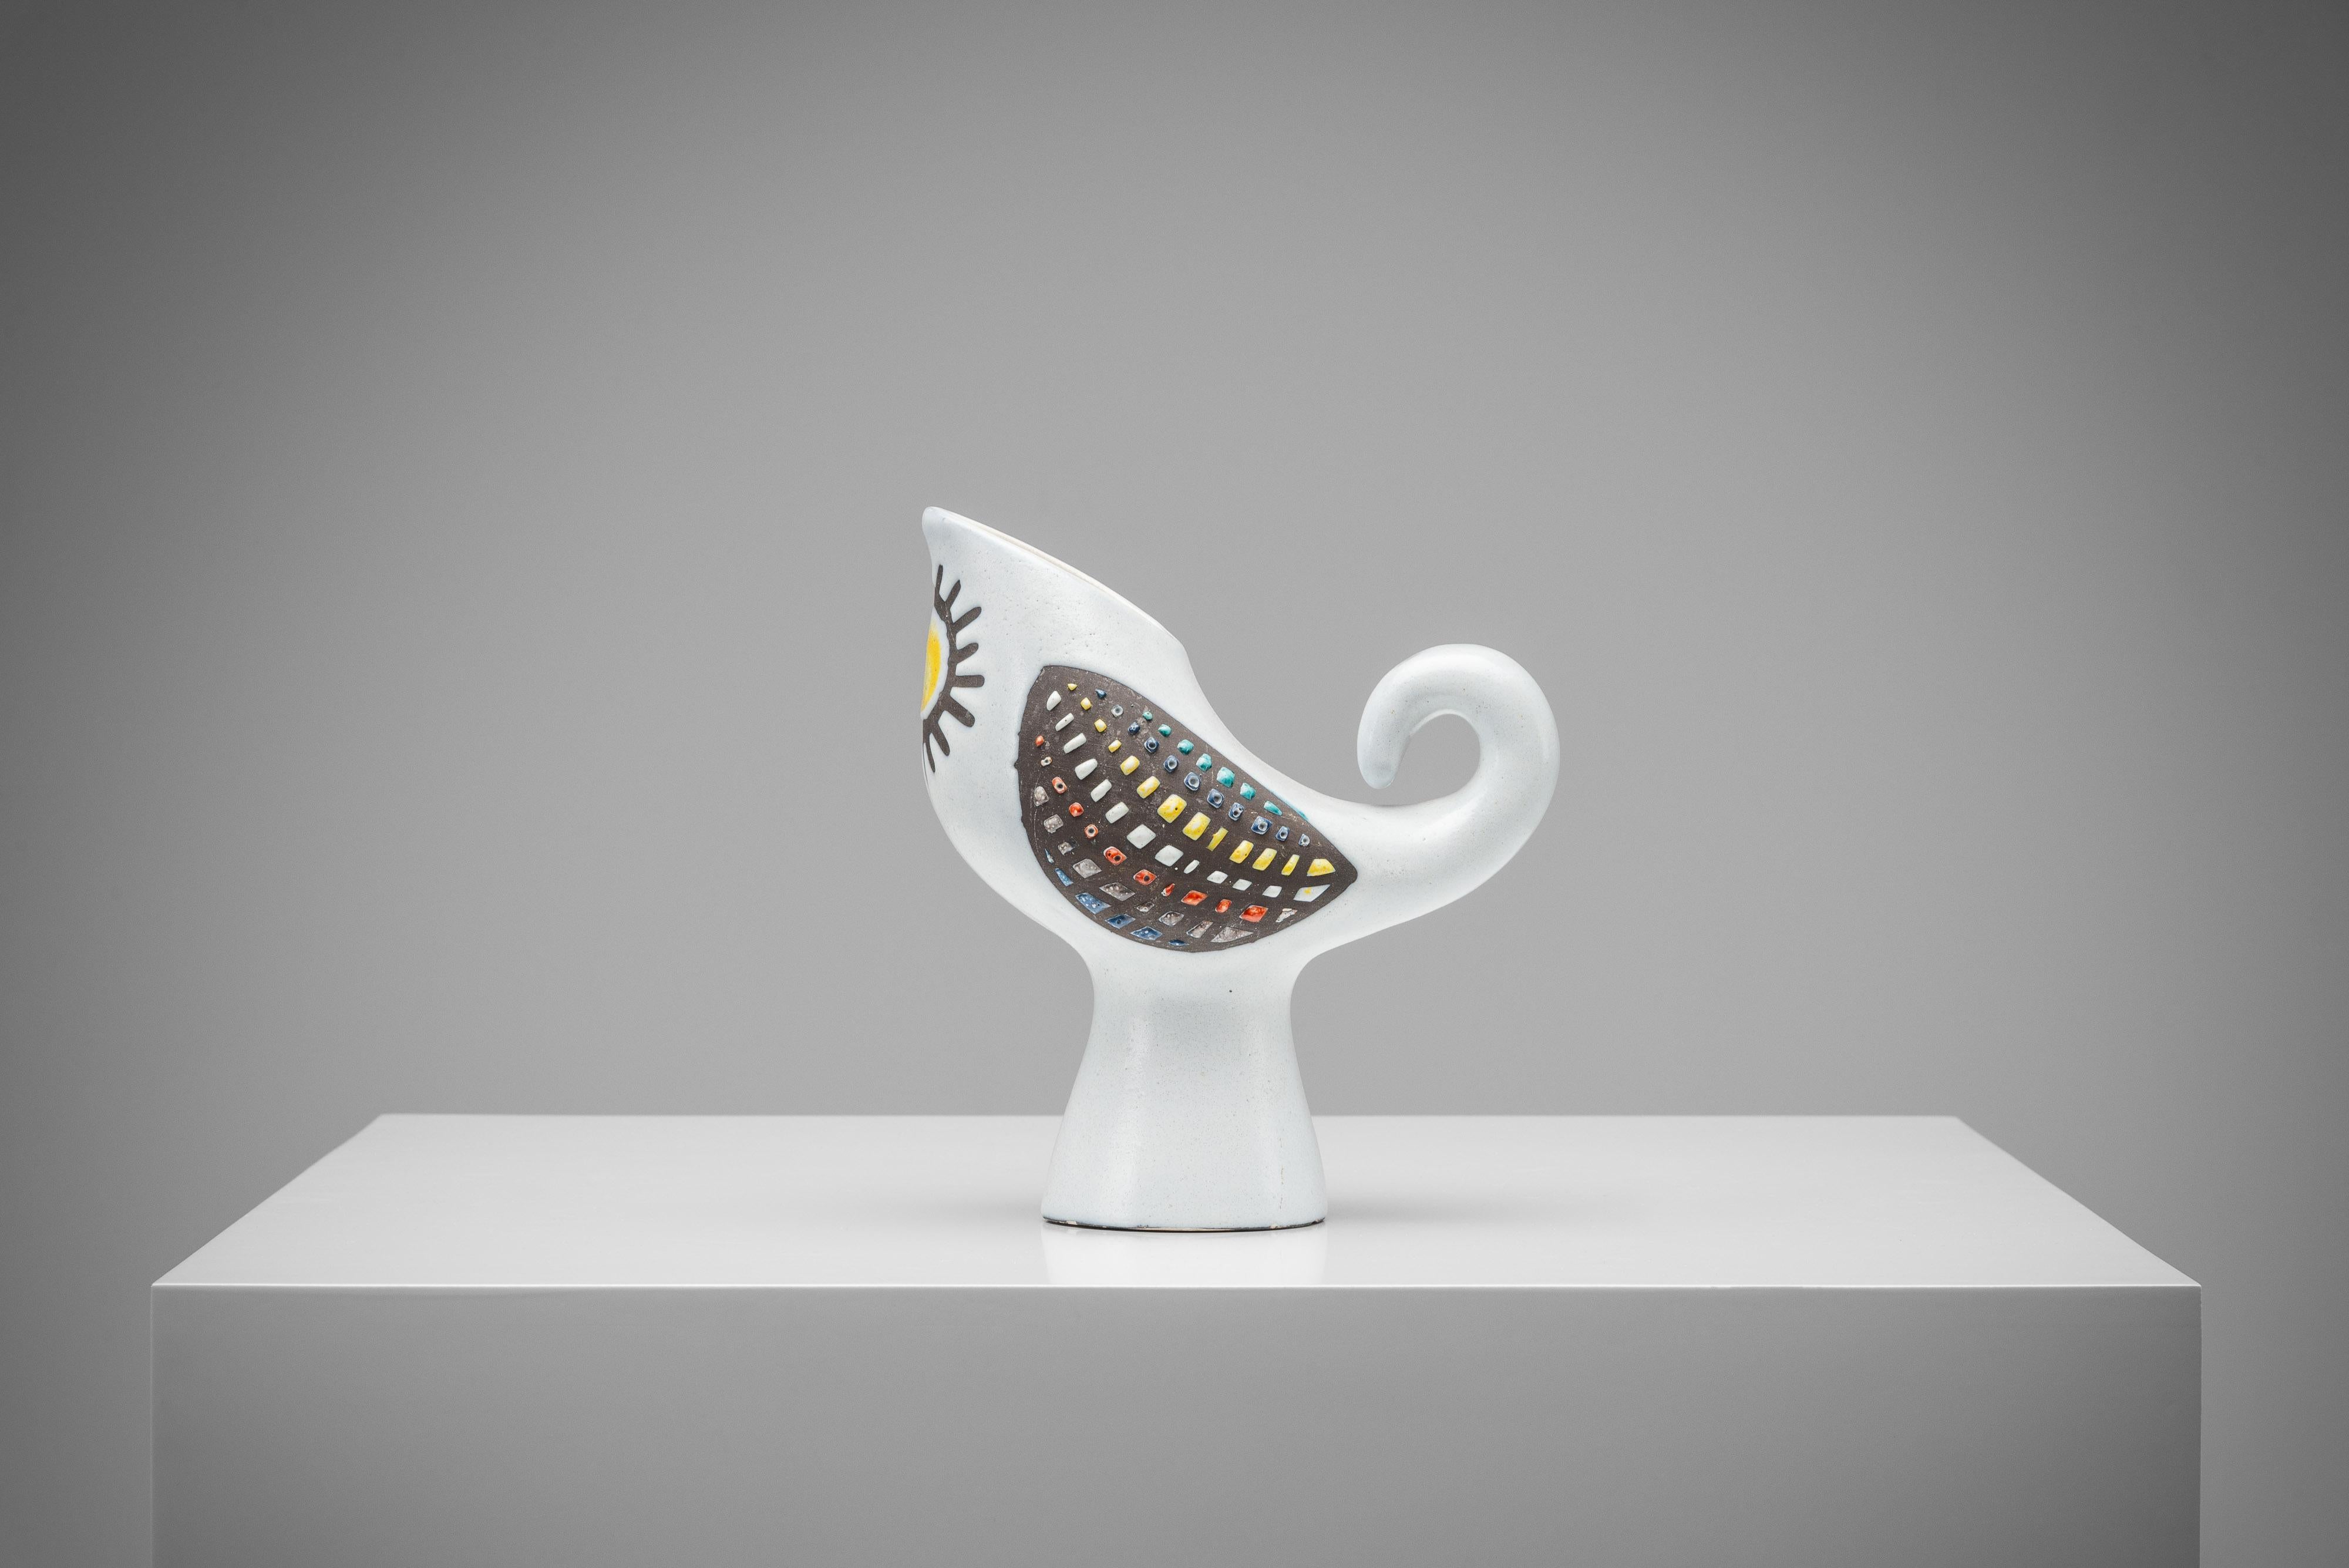 Ce pichet en céramique est une création spéciale de Roger Capron, fabriquée en France en 1960. Il a la forme d'un oiseau ou d'un coq abstrait et a été fabriqué dans les années 1960. Il présente un design surprenant avec une glaçure blanche douce et